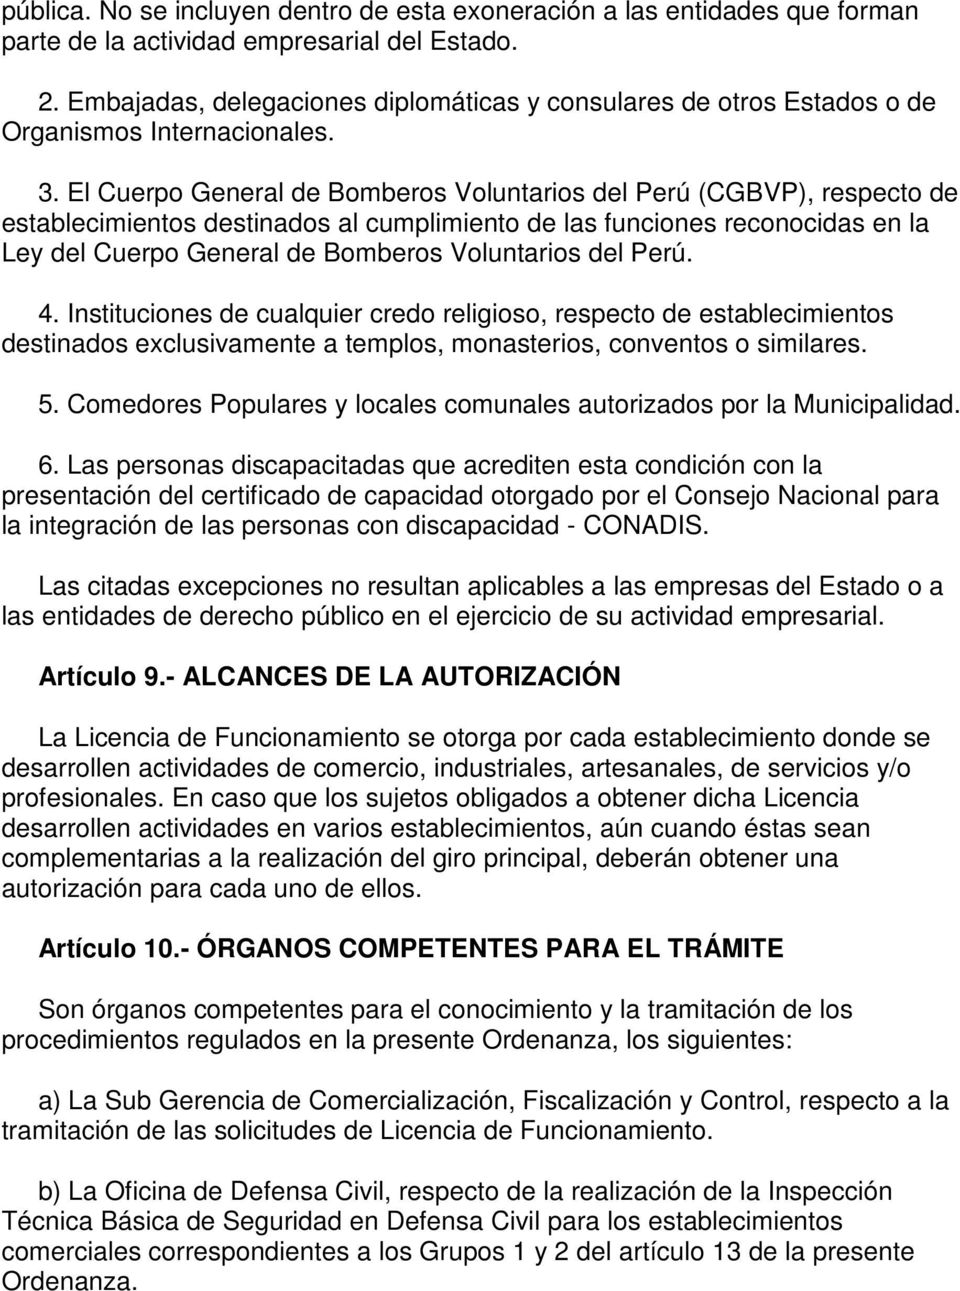 El Cuerpo General de Bomberos Voluntarios del Perú (CGBVP), respecto de establecimientos destinados al cumplimiento de las funciones reconocidas en la Ley del Cuerpo General de Bomberos Voluntarios